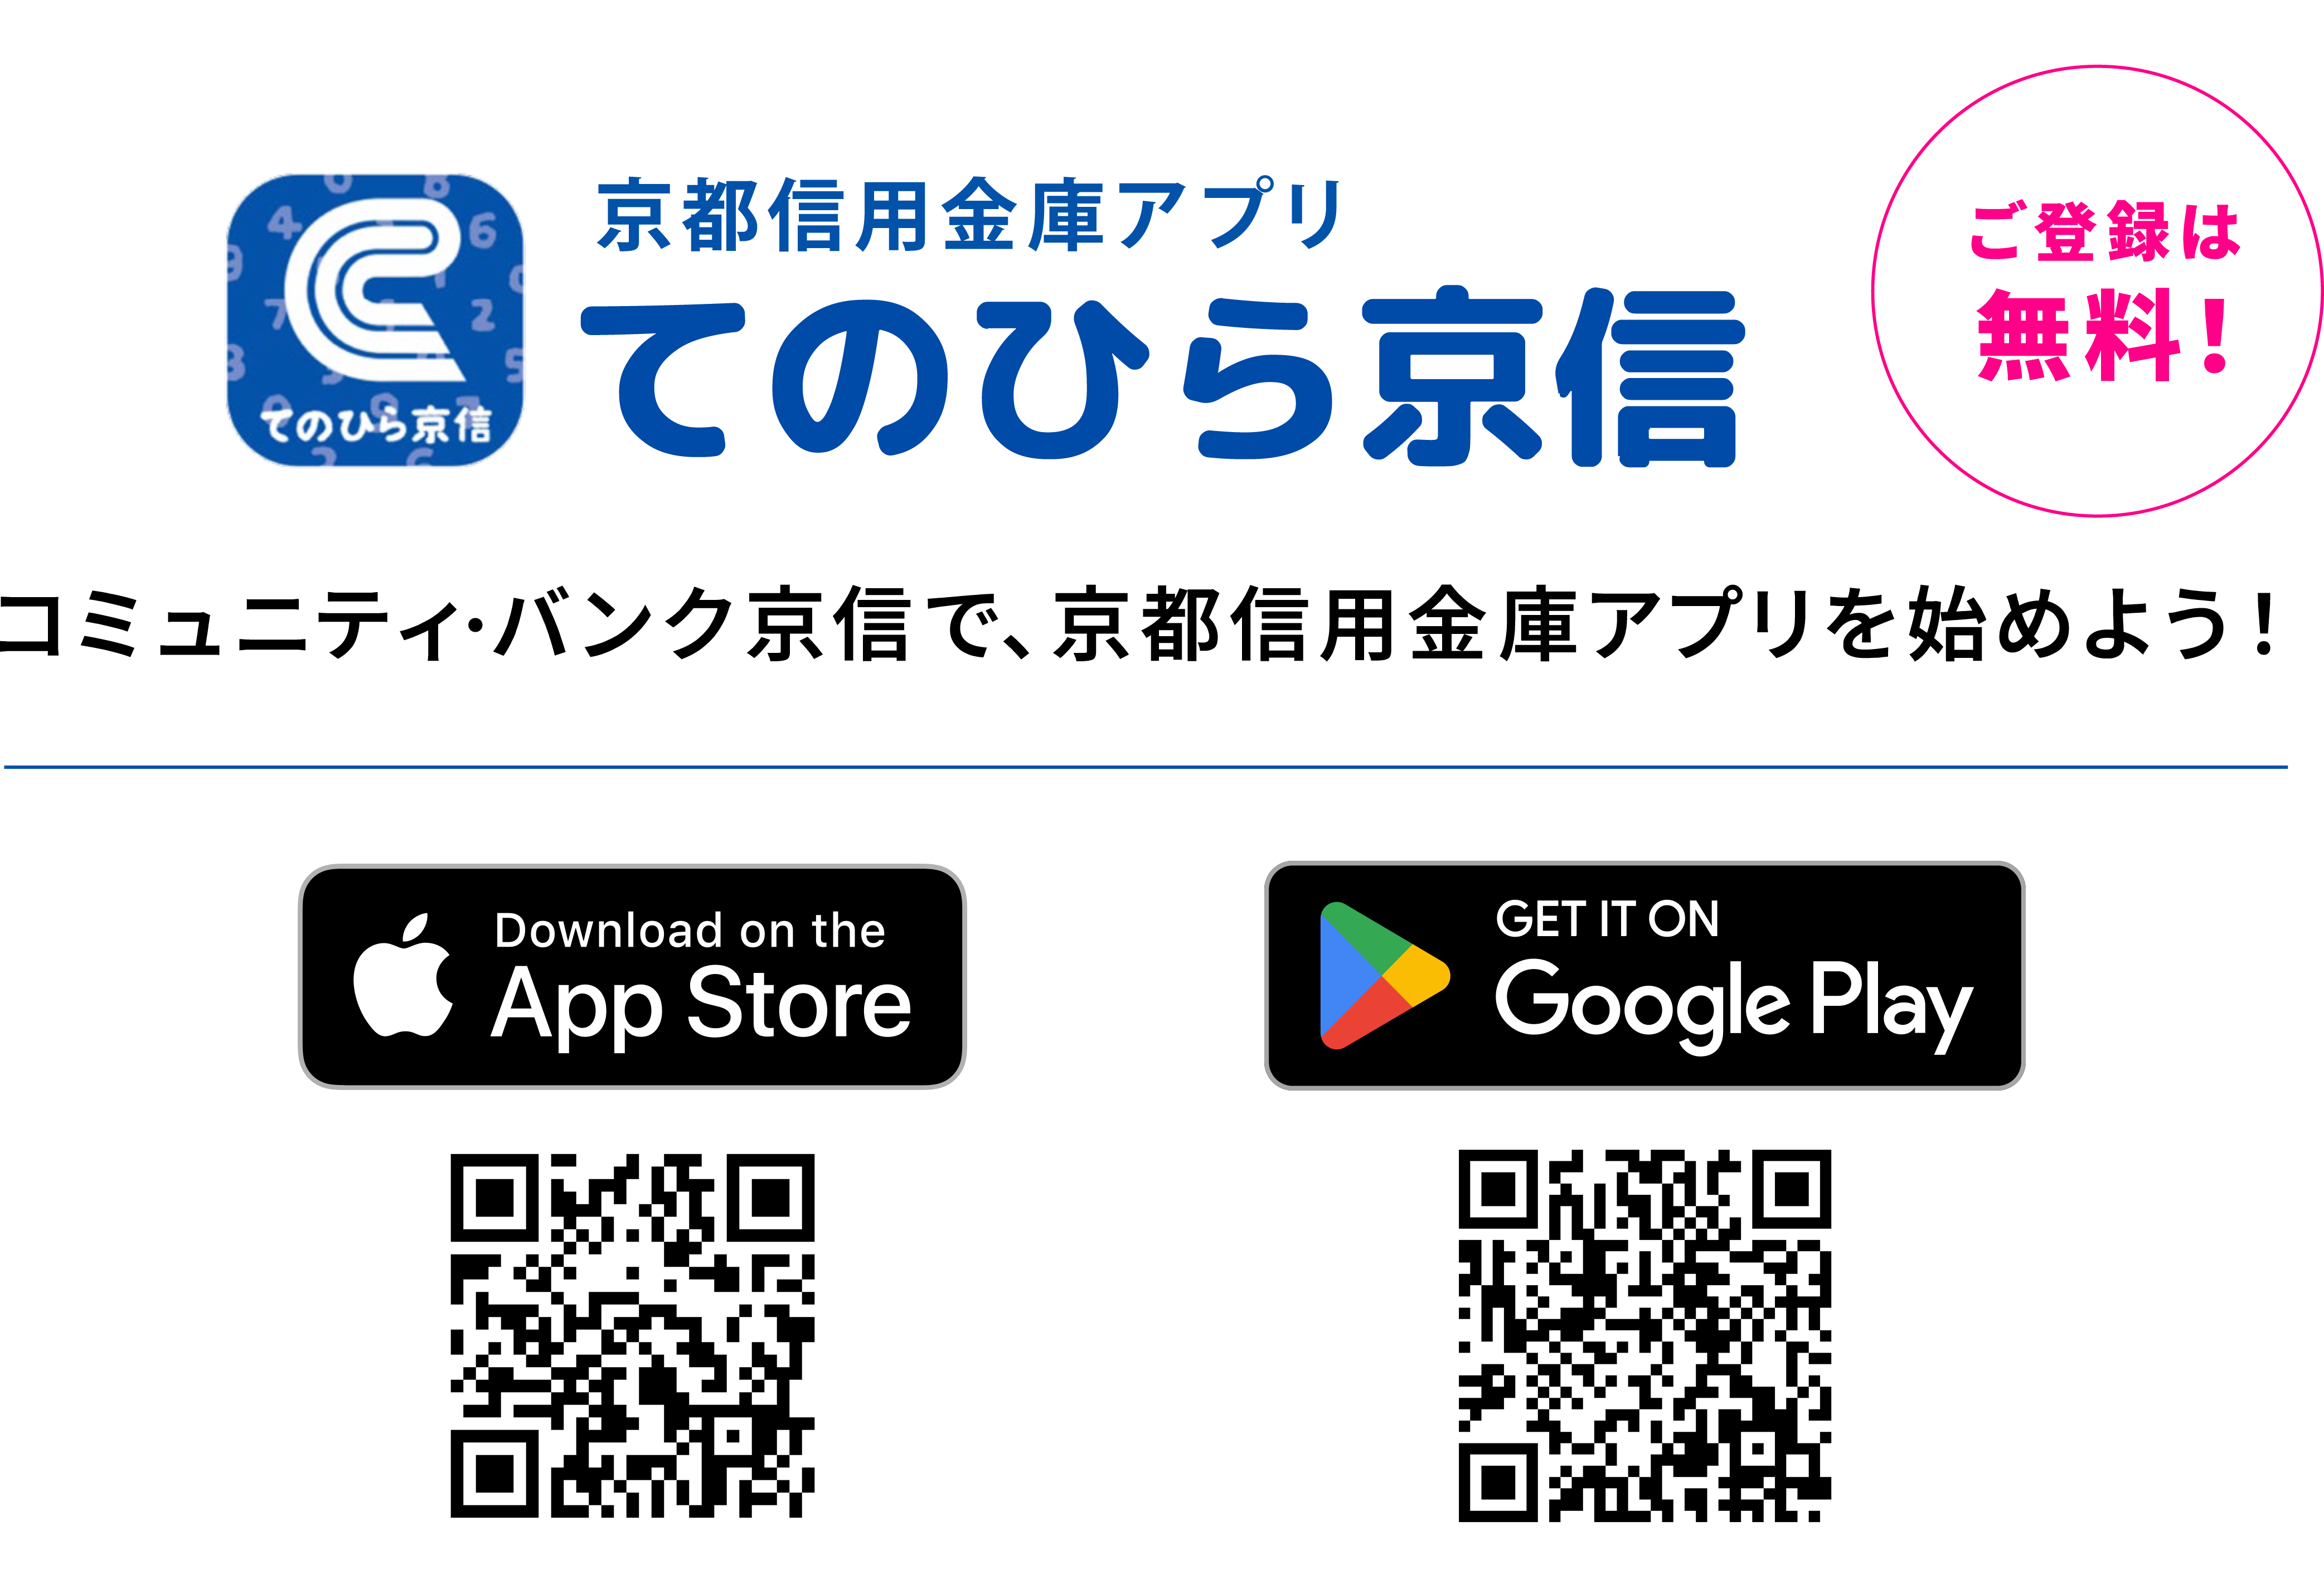 京信バンキングアプリ ご登録は無料！ てのひら京信 コミュニティバンク京信で、京都信用金庫アプリを始めよう！